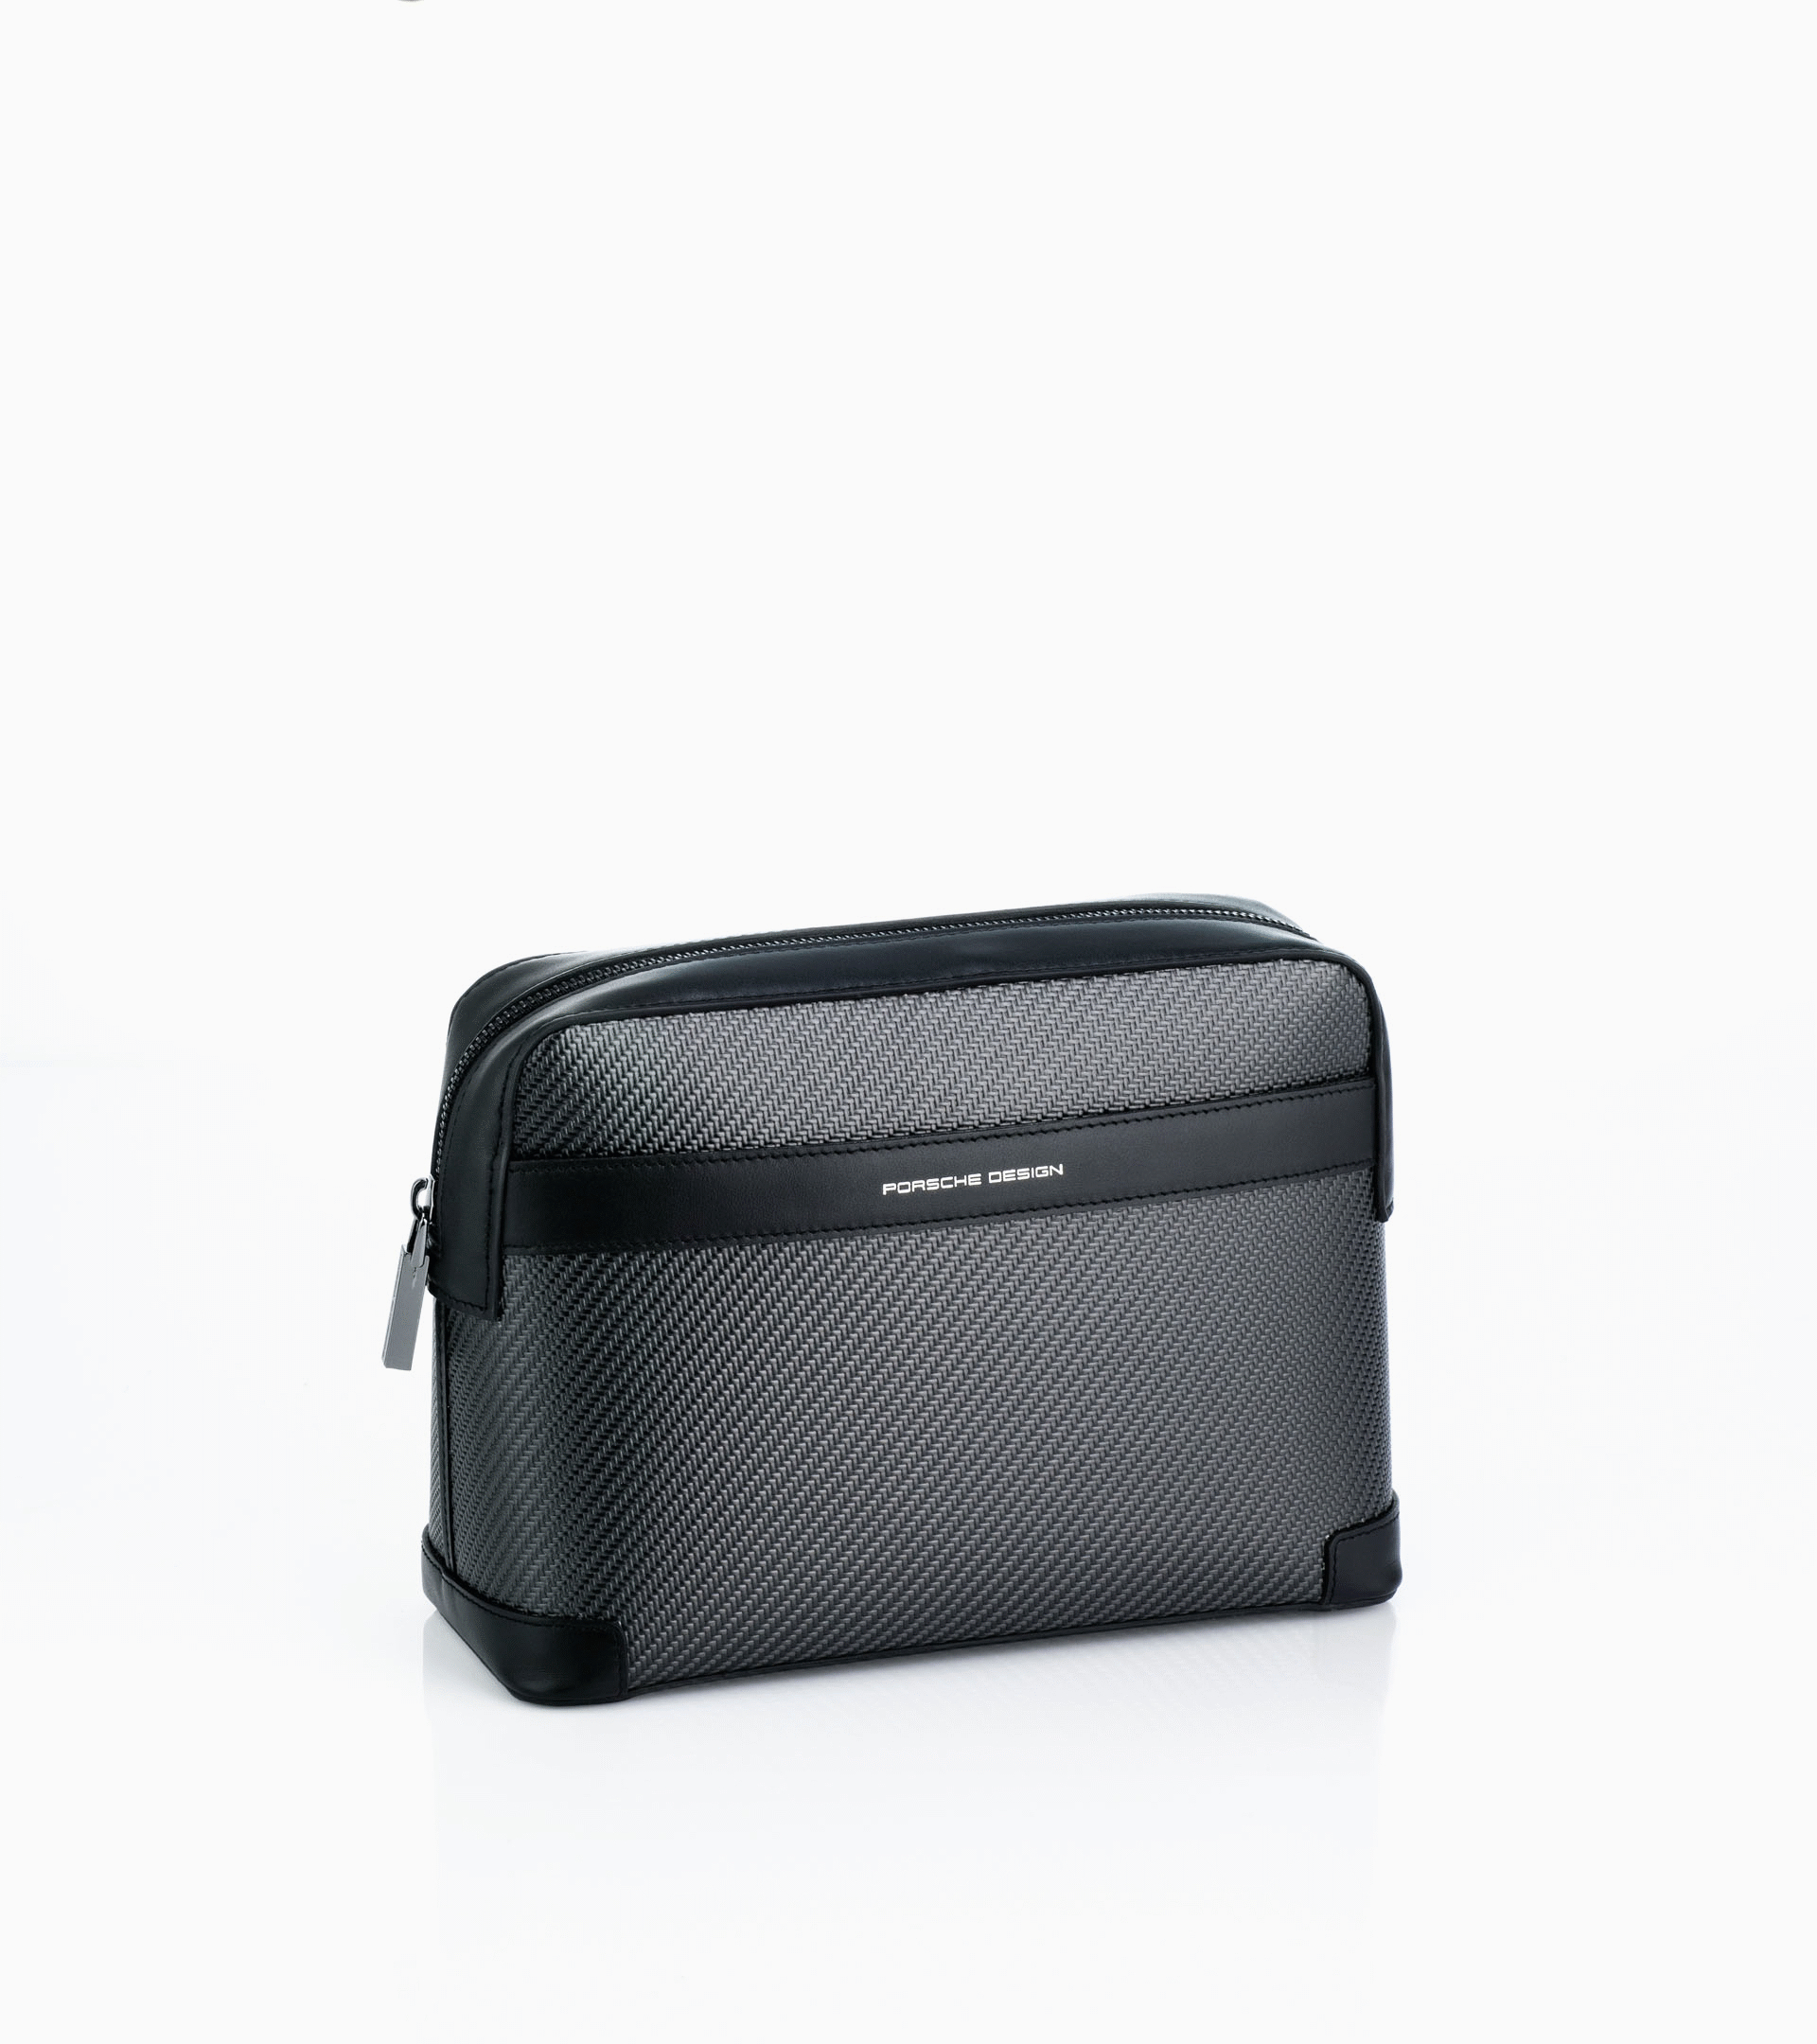 Carbon Washbag black - Luxury Travel Accessories | Porsche Design ...